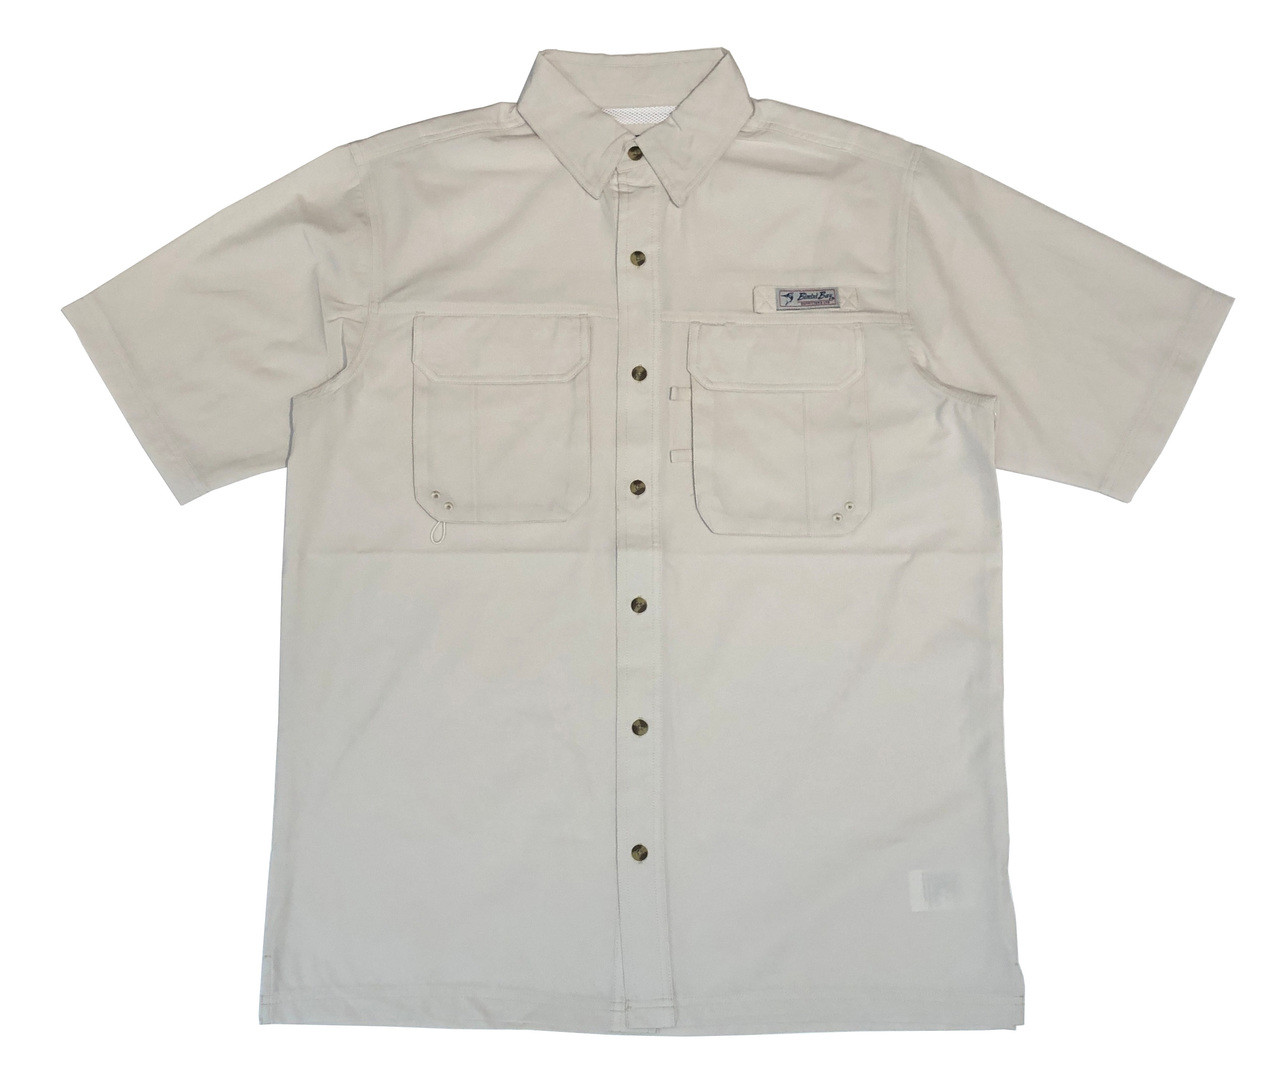 Bimini Bay Outfitters Bimini Flats IV Short Sleeve Shirt - Dick Anthony Ltd.